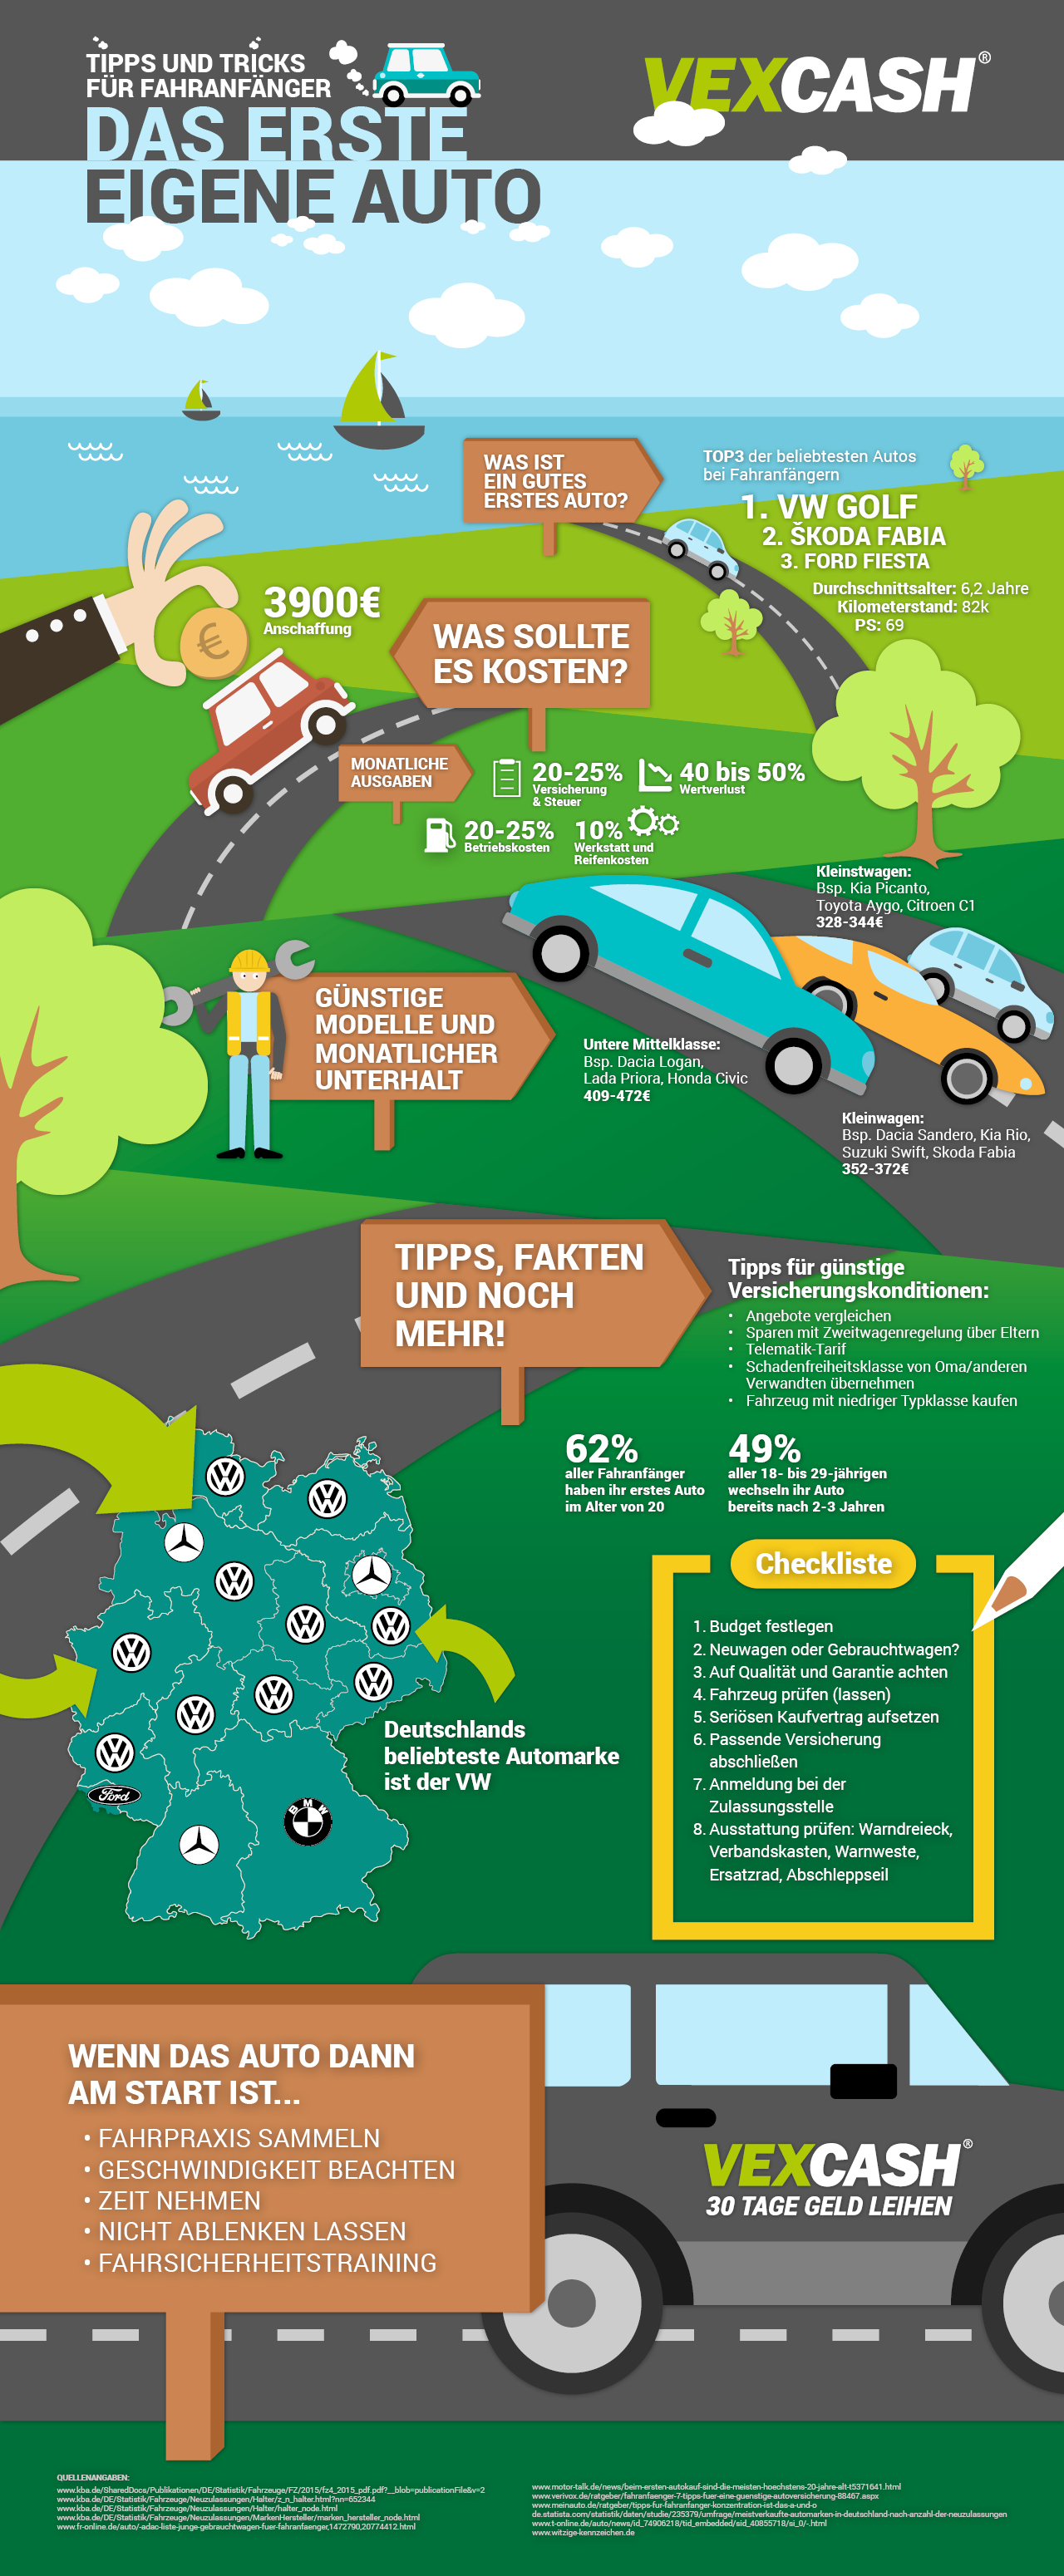 Vexcash Infografik Tipps erstes eigenes Auto